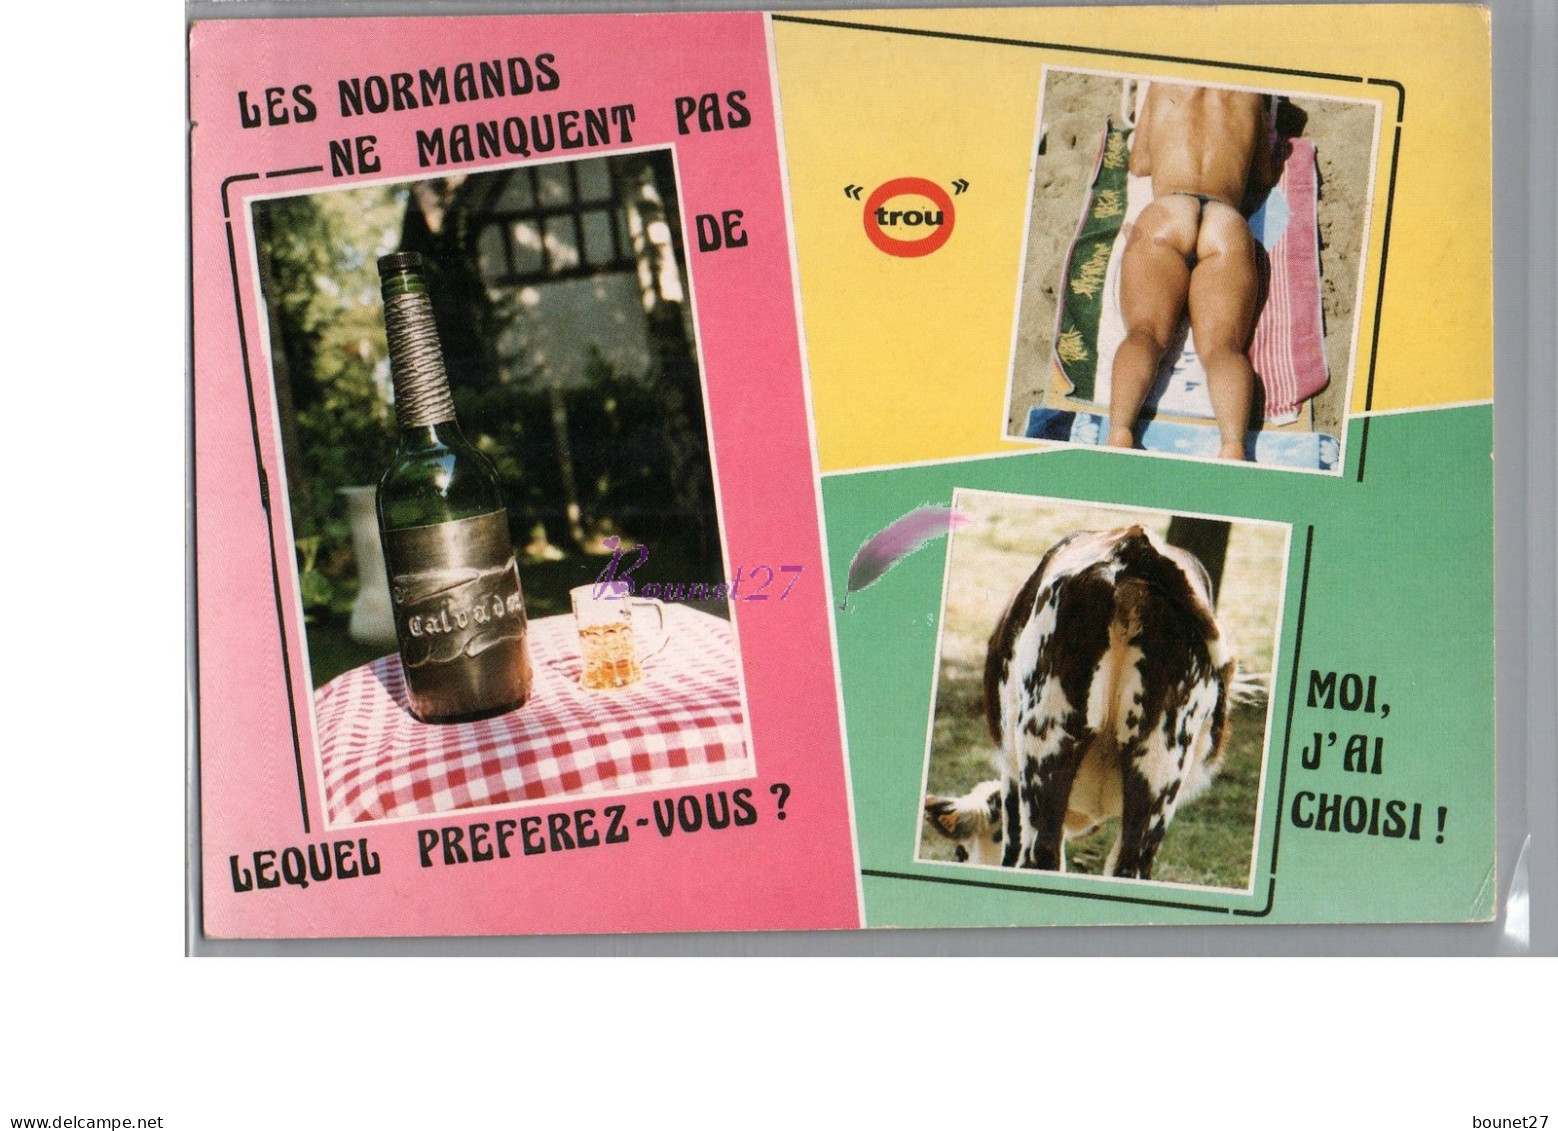 NORMANDIE - Humour Les Normands Ne Manquent Pas De Trou - Le Trou Normand Calva Cul De Vache Et Homme En String - Basse-Normandie